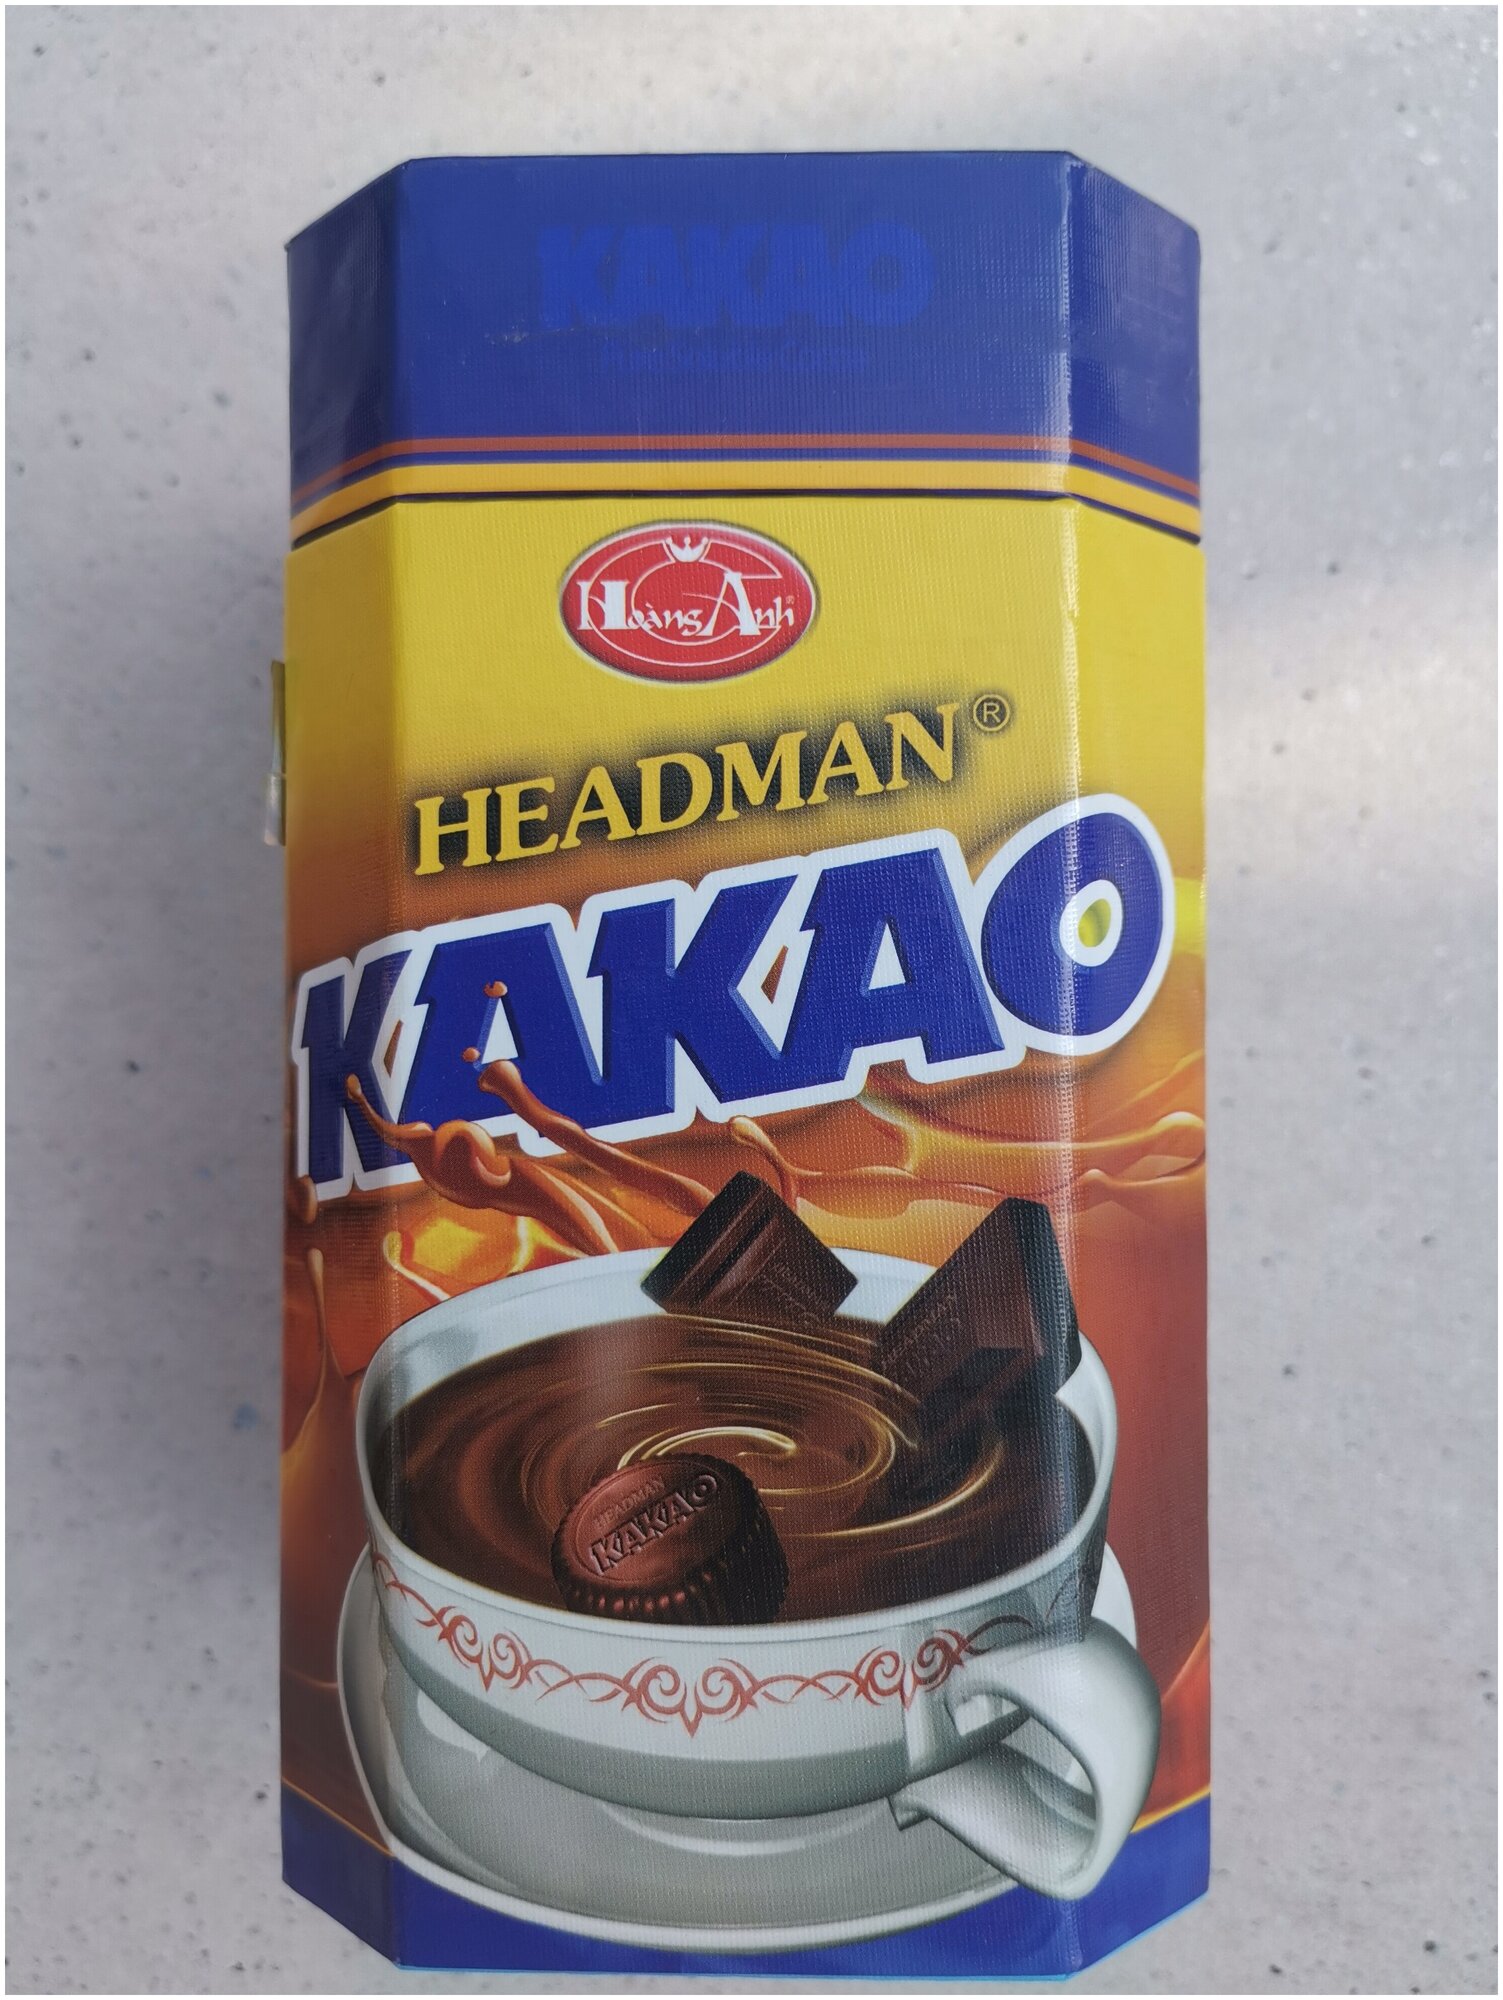 Вьетнамский быстрорастворимый какао HEADMAN c шоколадным вкусом в подарочной коробке, 500 г - фотография № 1